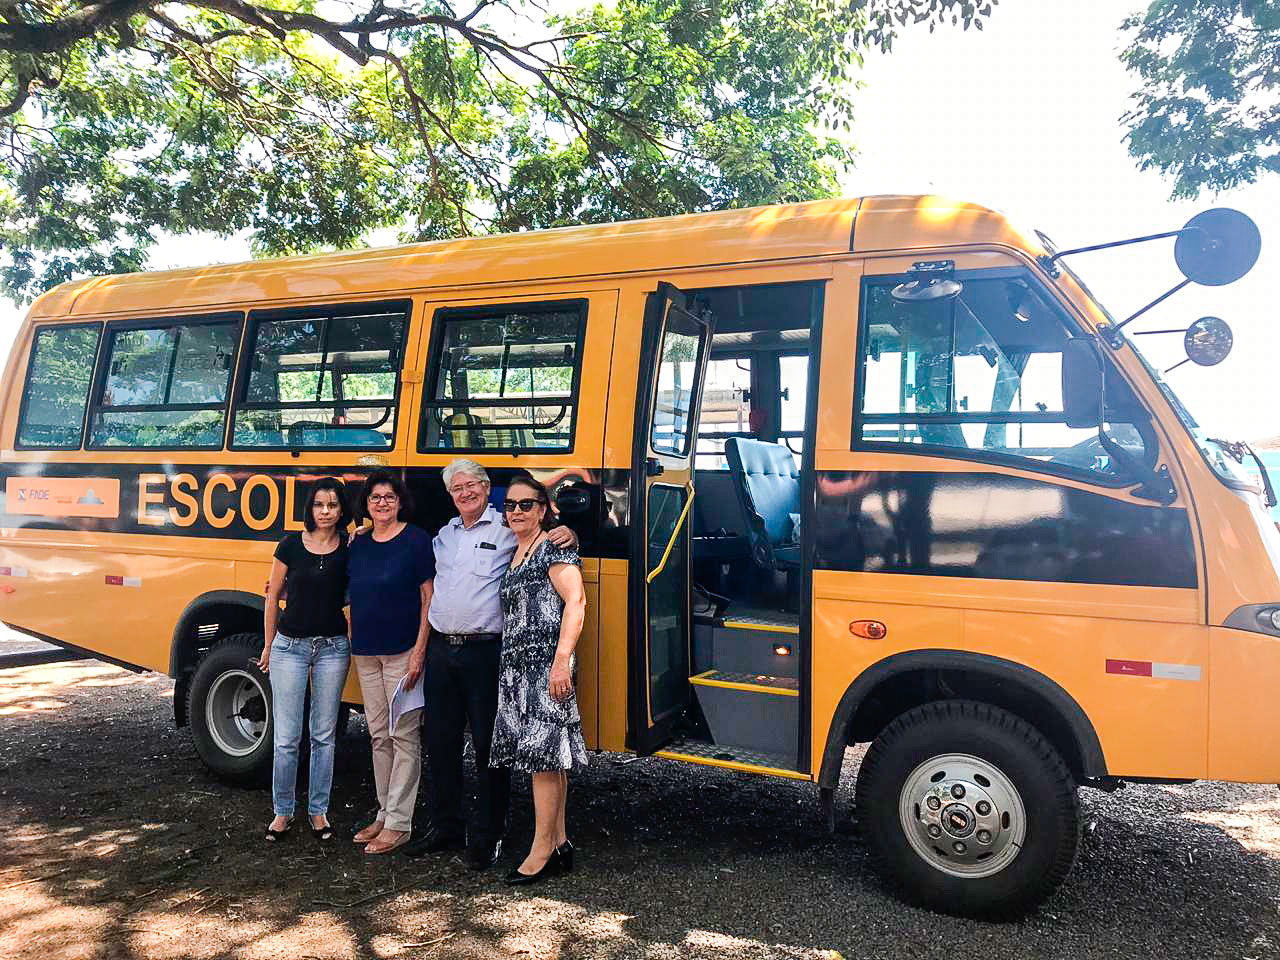 Gestores do município recebem novo micro-ônibus que passa a integrar a frota municipal de educação. Foto: divulgação.